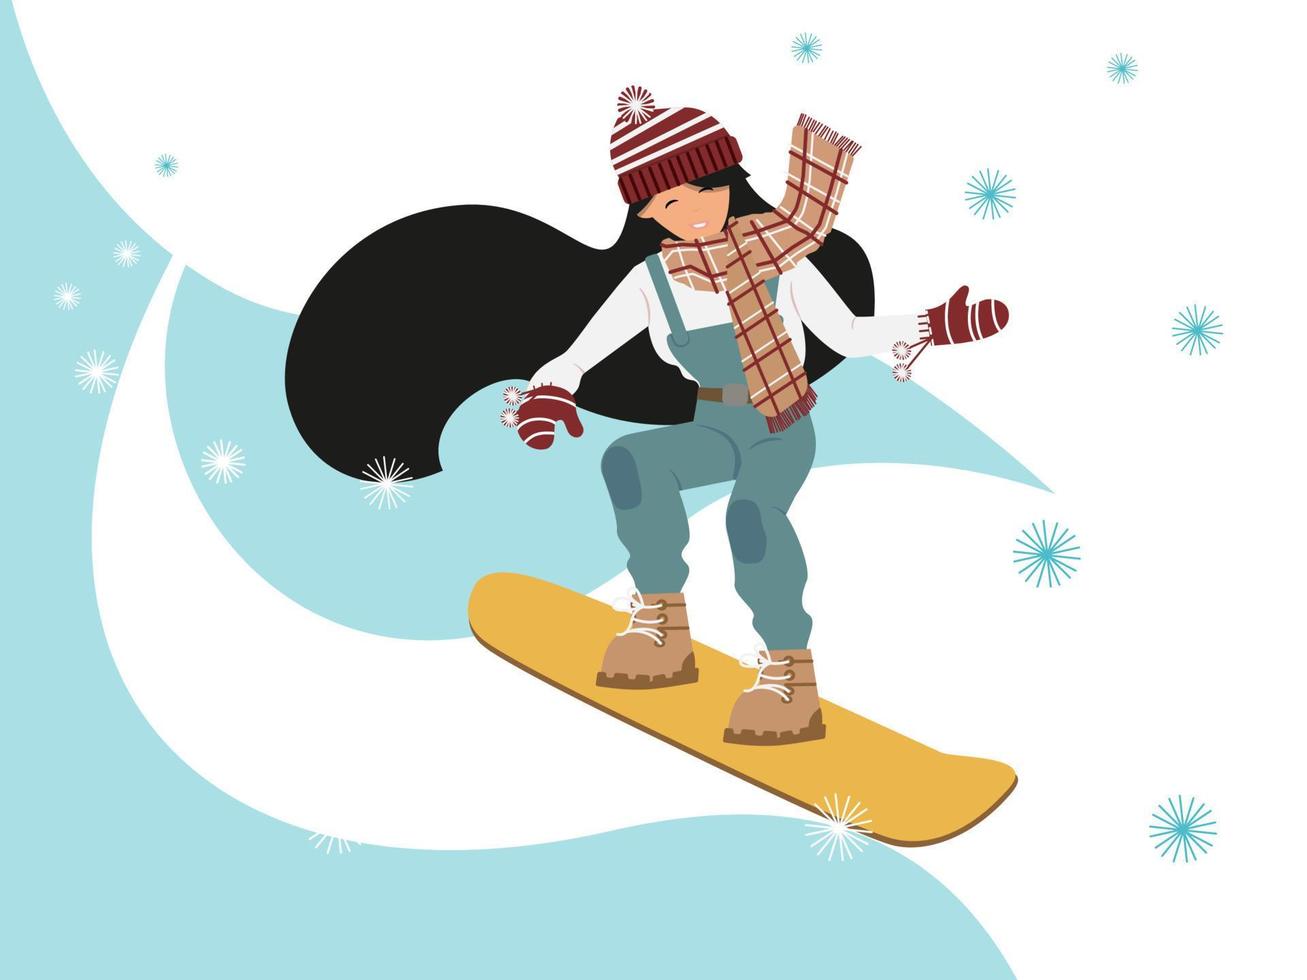 jong meisje snowboarden naar beneden een besneeuwd berg, vector illustratie, voor extreem sport- ontwerp, kaarten, flyers of samenstelling element